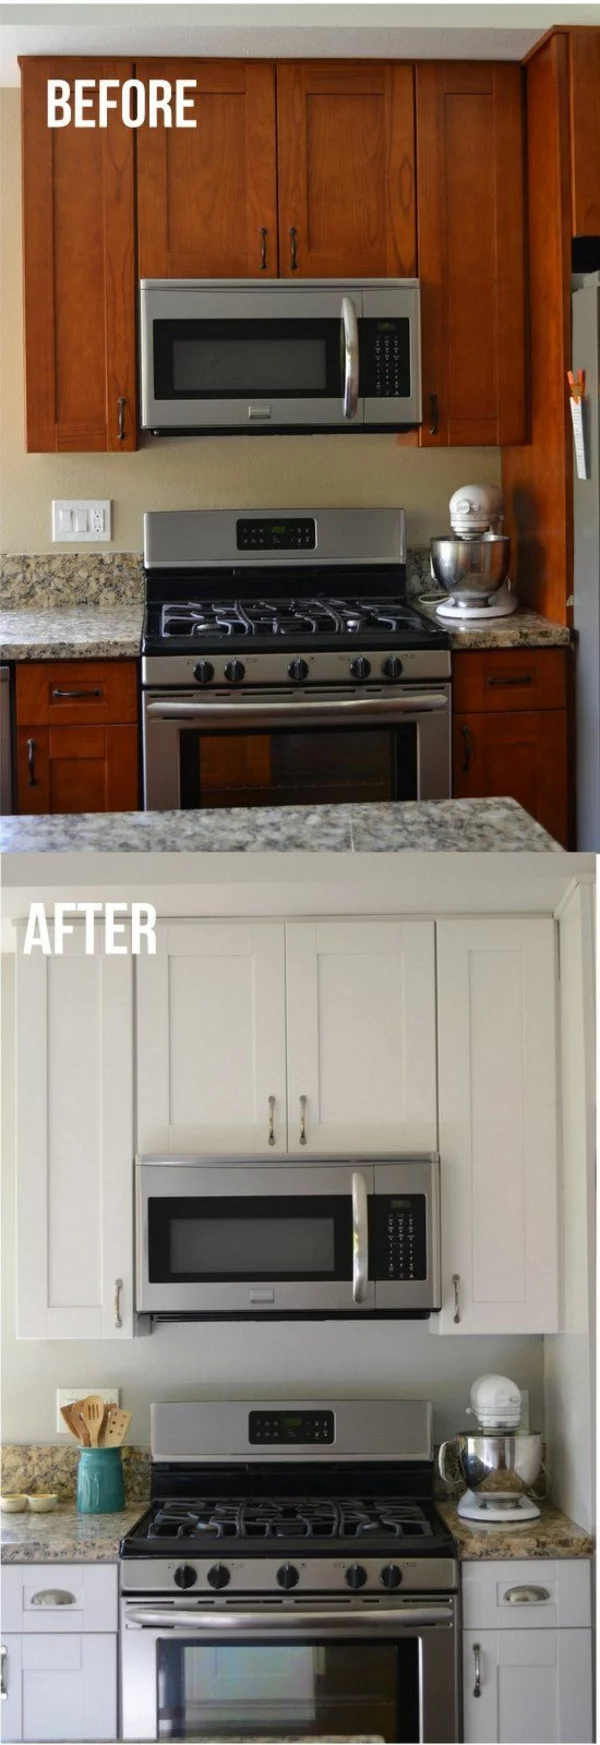 küchenfronten erneuern holz küchenschränke neu streichen in weiß